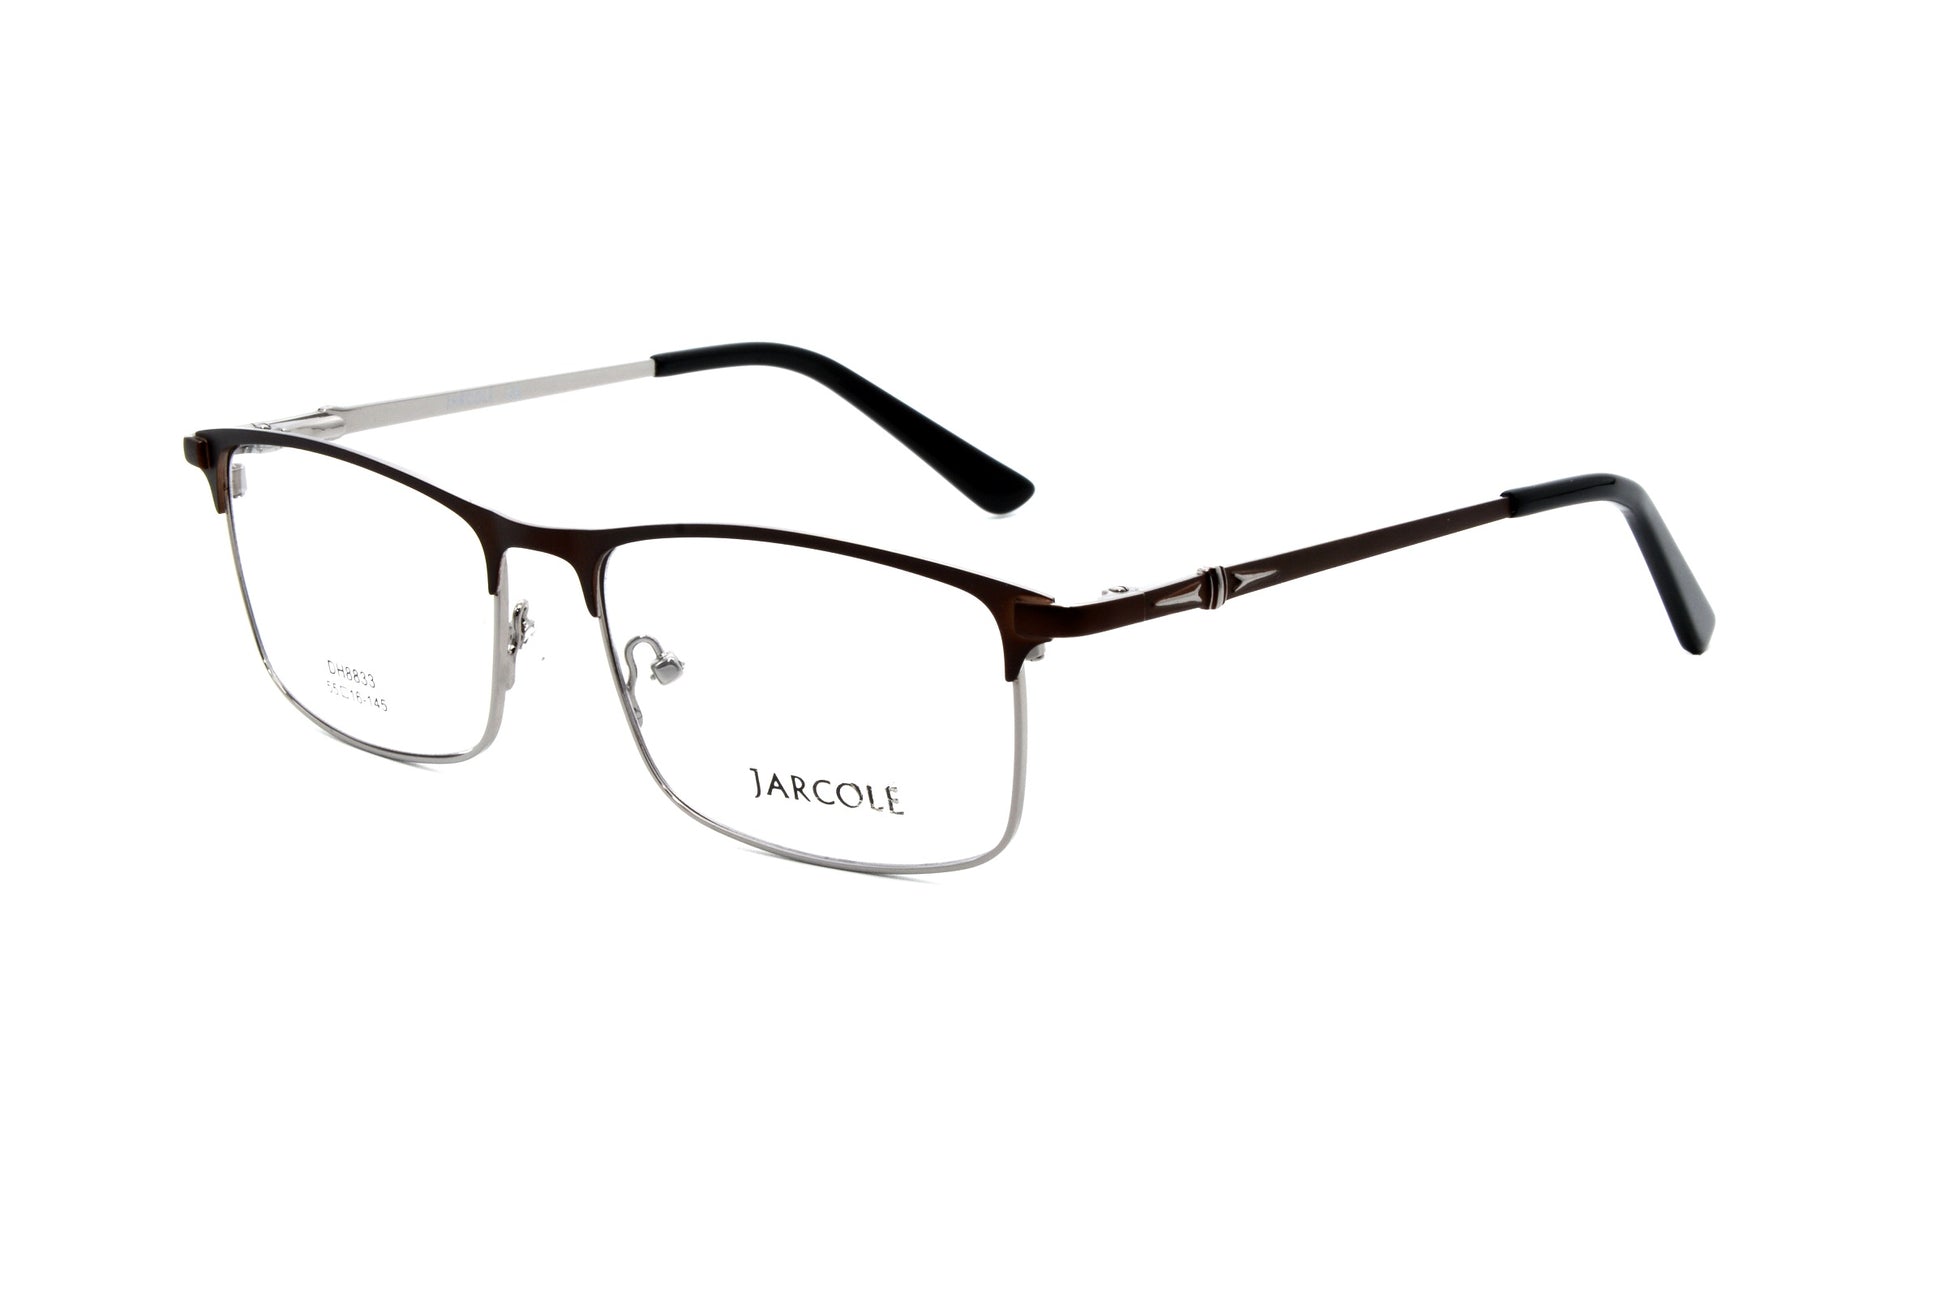 Jarcole eyewear DH-8833 C2